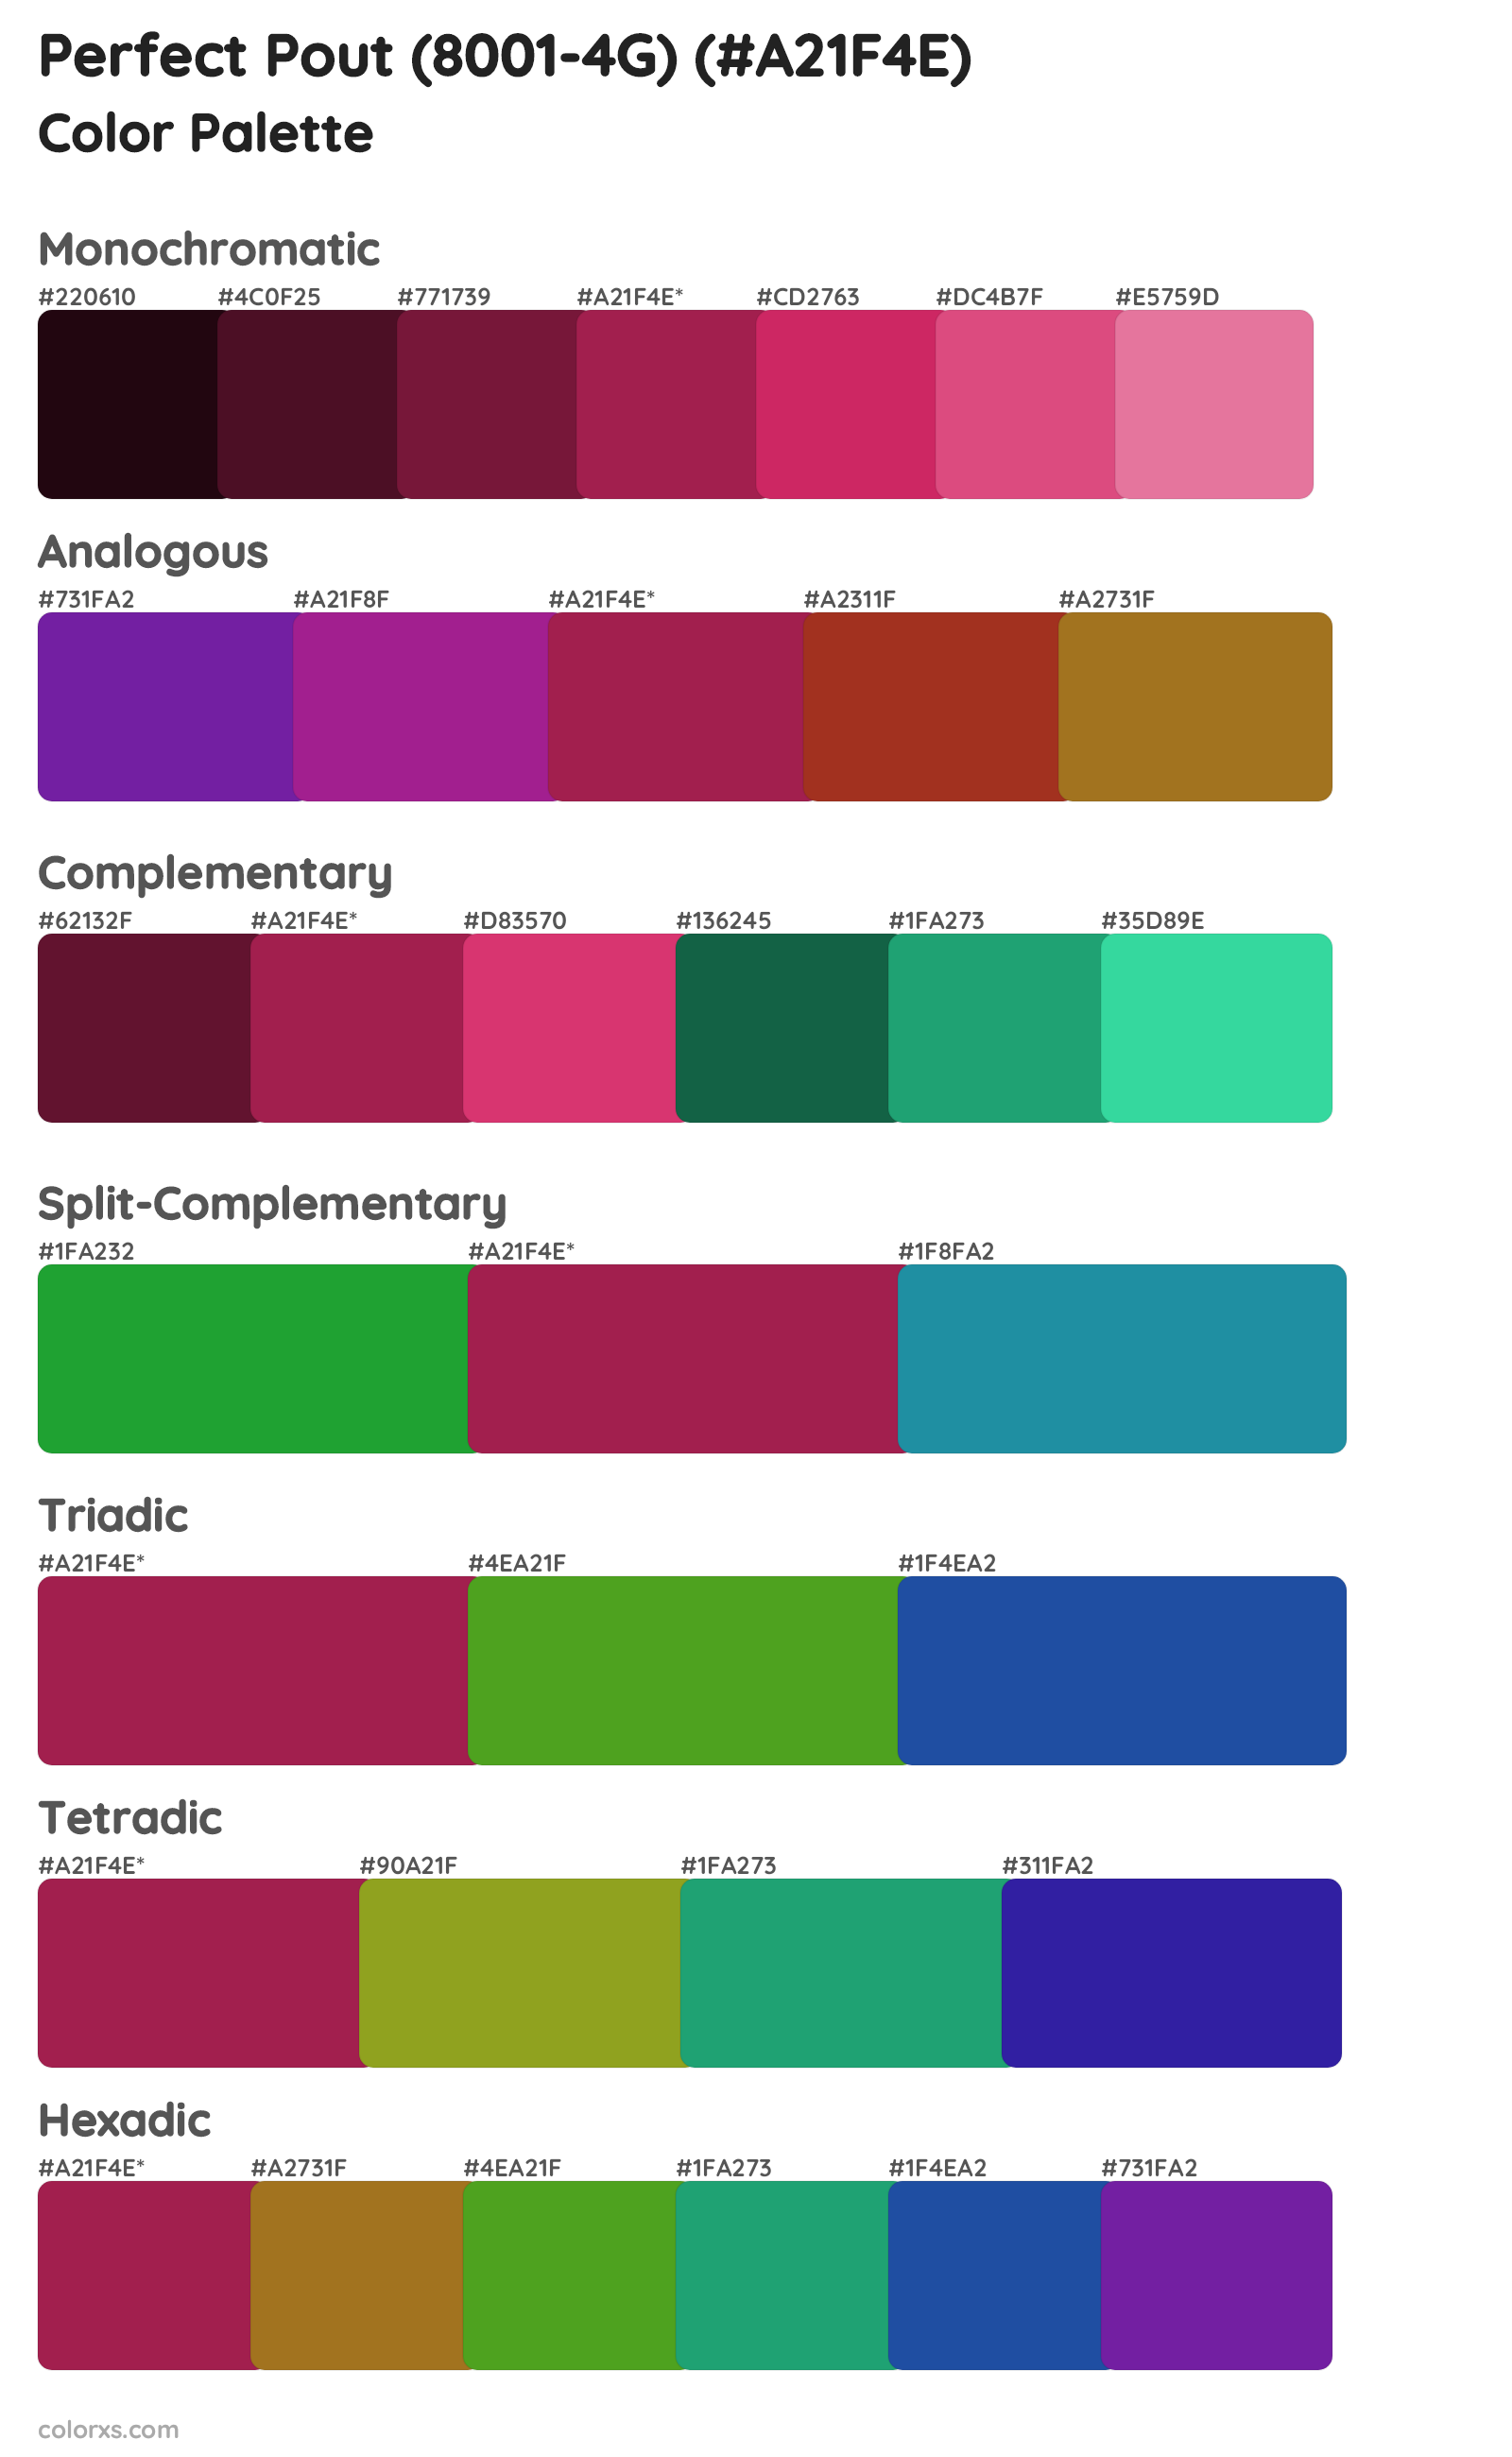 Perfect Pout (8001-4G) Color Scheme Palettes